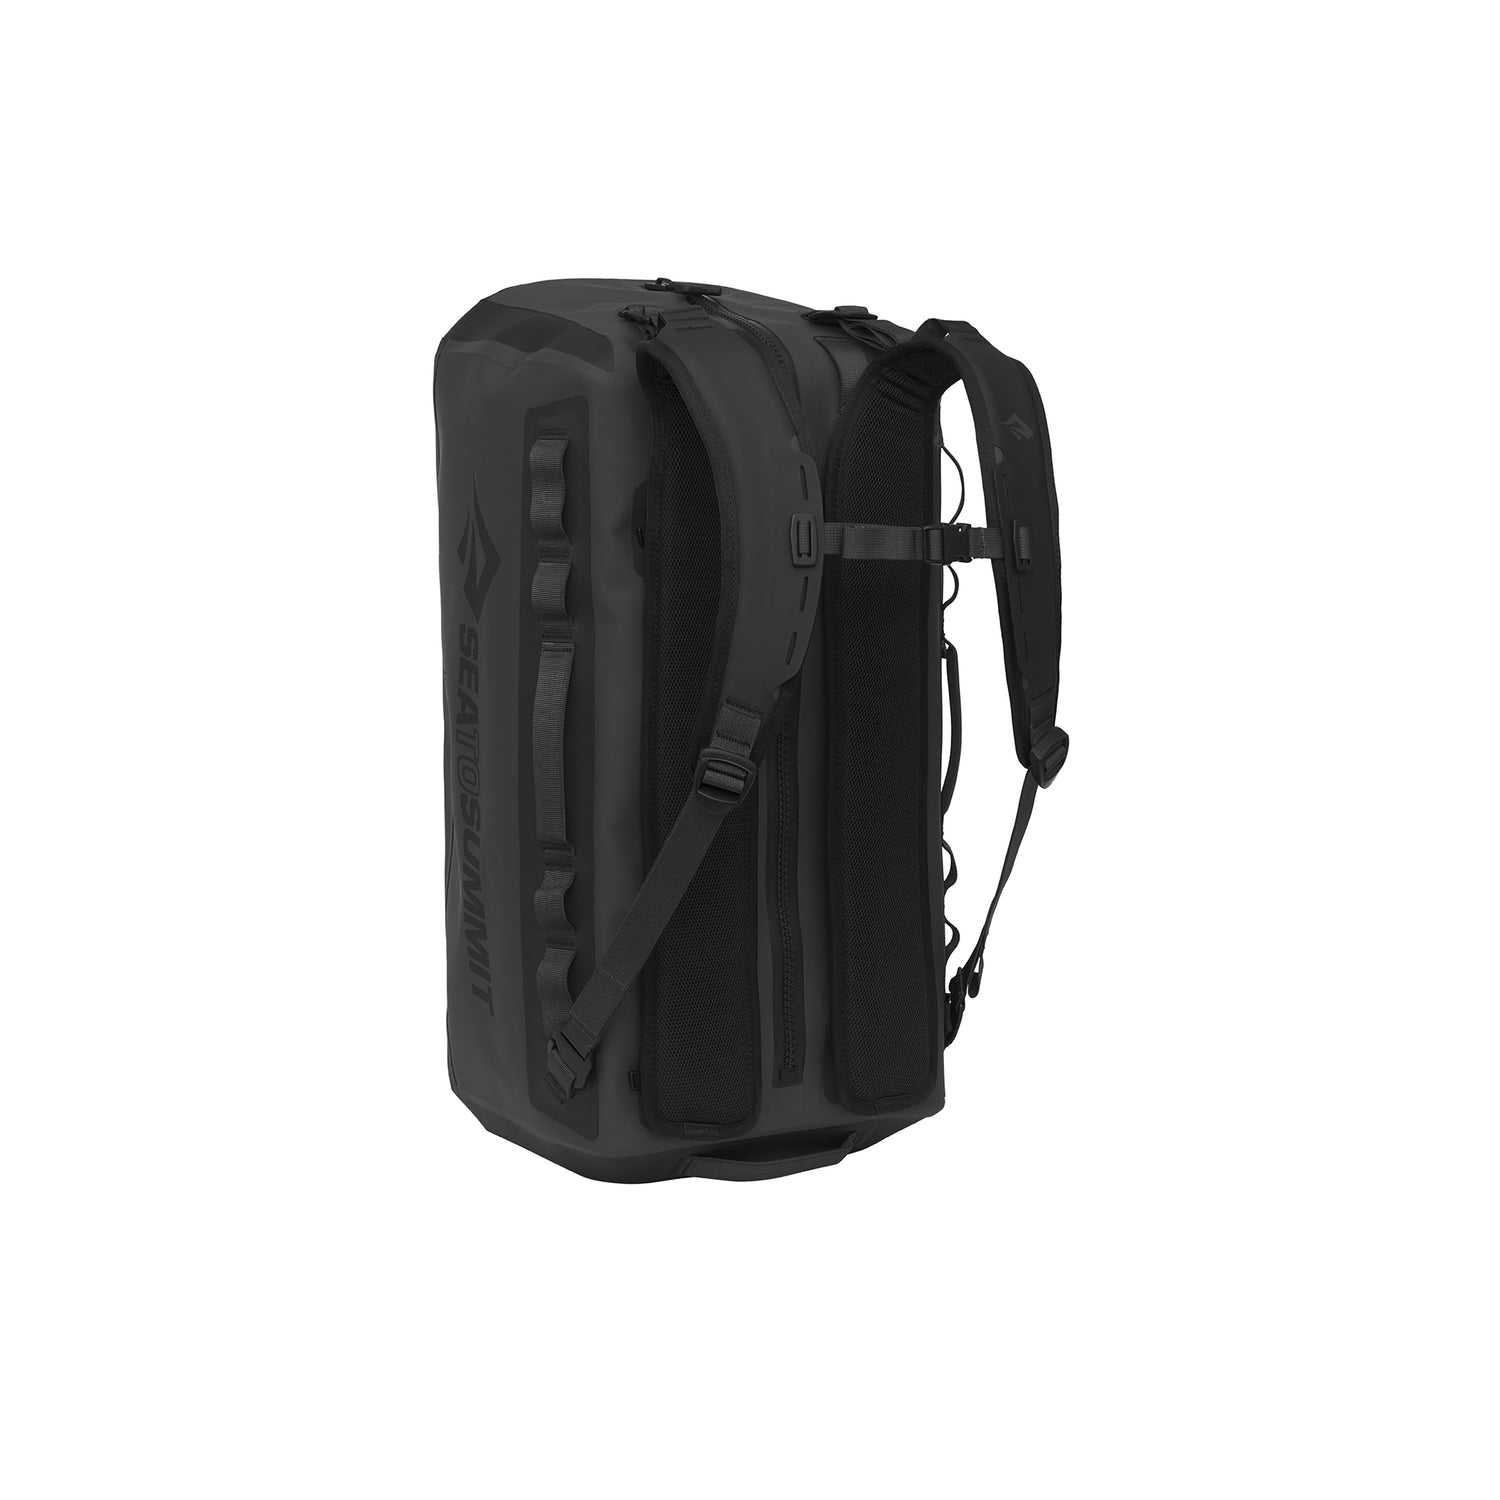 Pro-Light Waterproof Sling Bag Backpack - 4 Liters